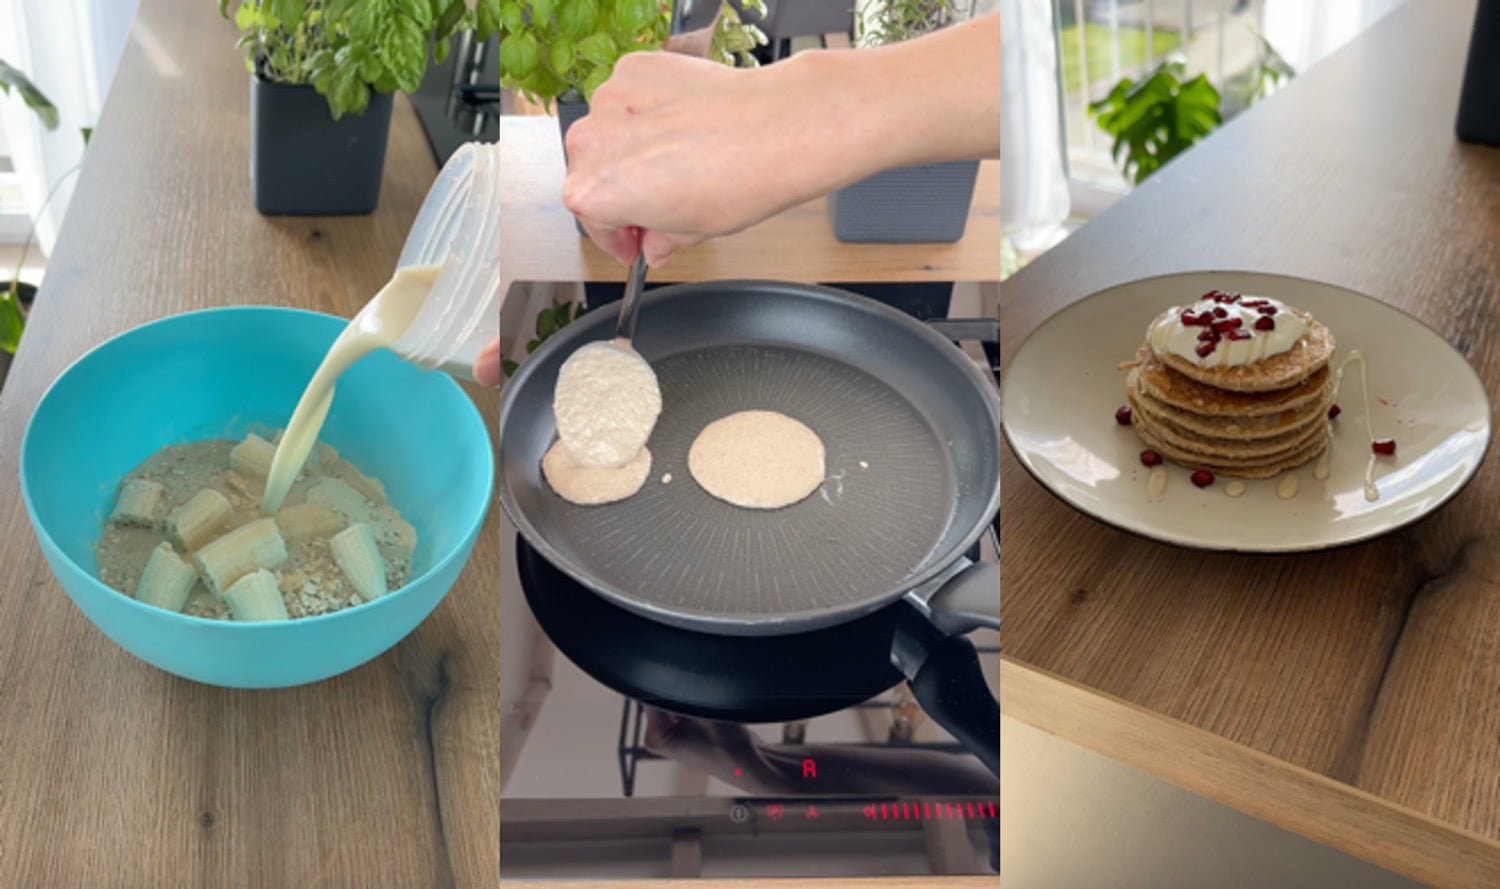 Drei Schritte zur Zubereitung gesunder Pancakes: Zutaten in einer blauen Schüssel, Teigportionen, die in einer Pfanne braten, und der fertige Stapel Pancakes mit Joghurt und Granatapfelkernen garniert auf einem Teller.